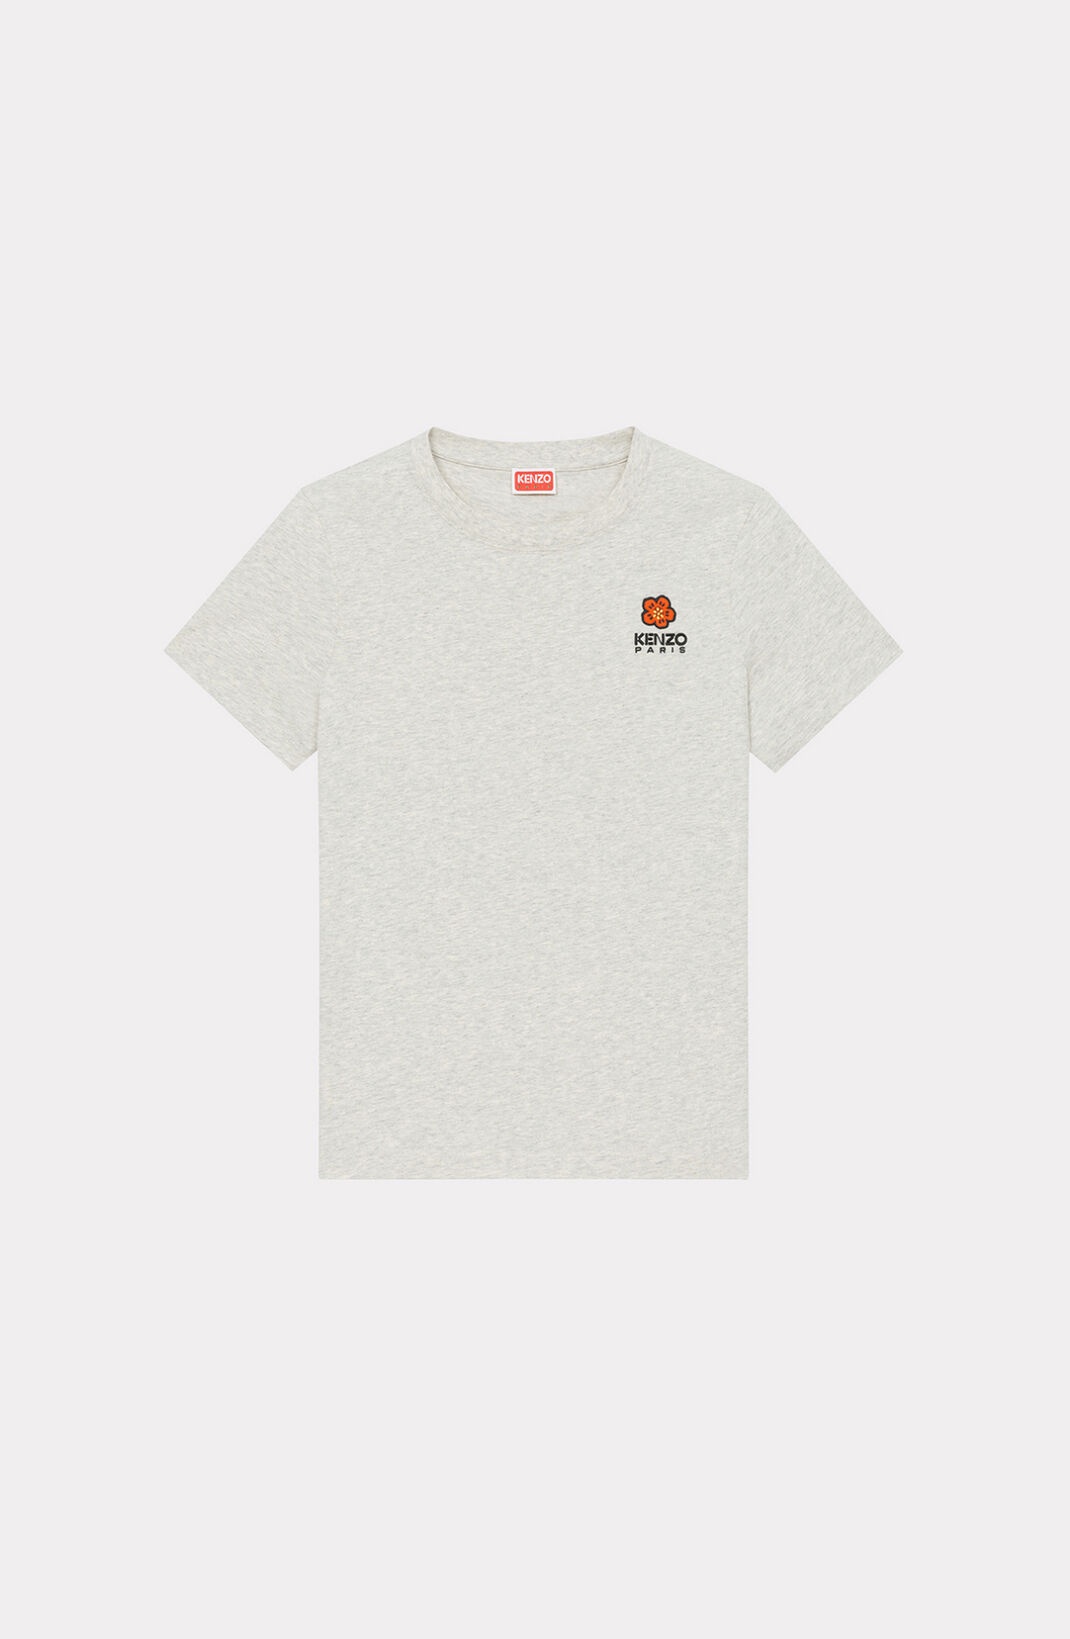 'BOKE FLOWER' crest T-shirt - 1